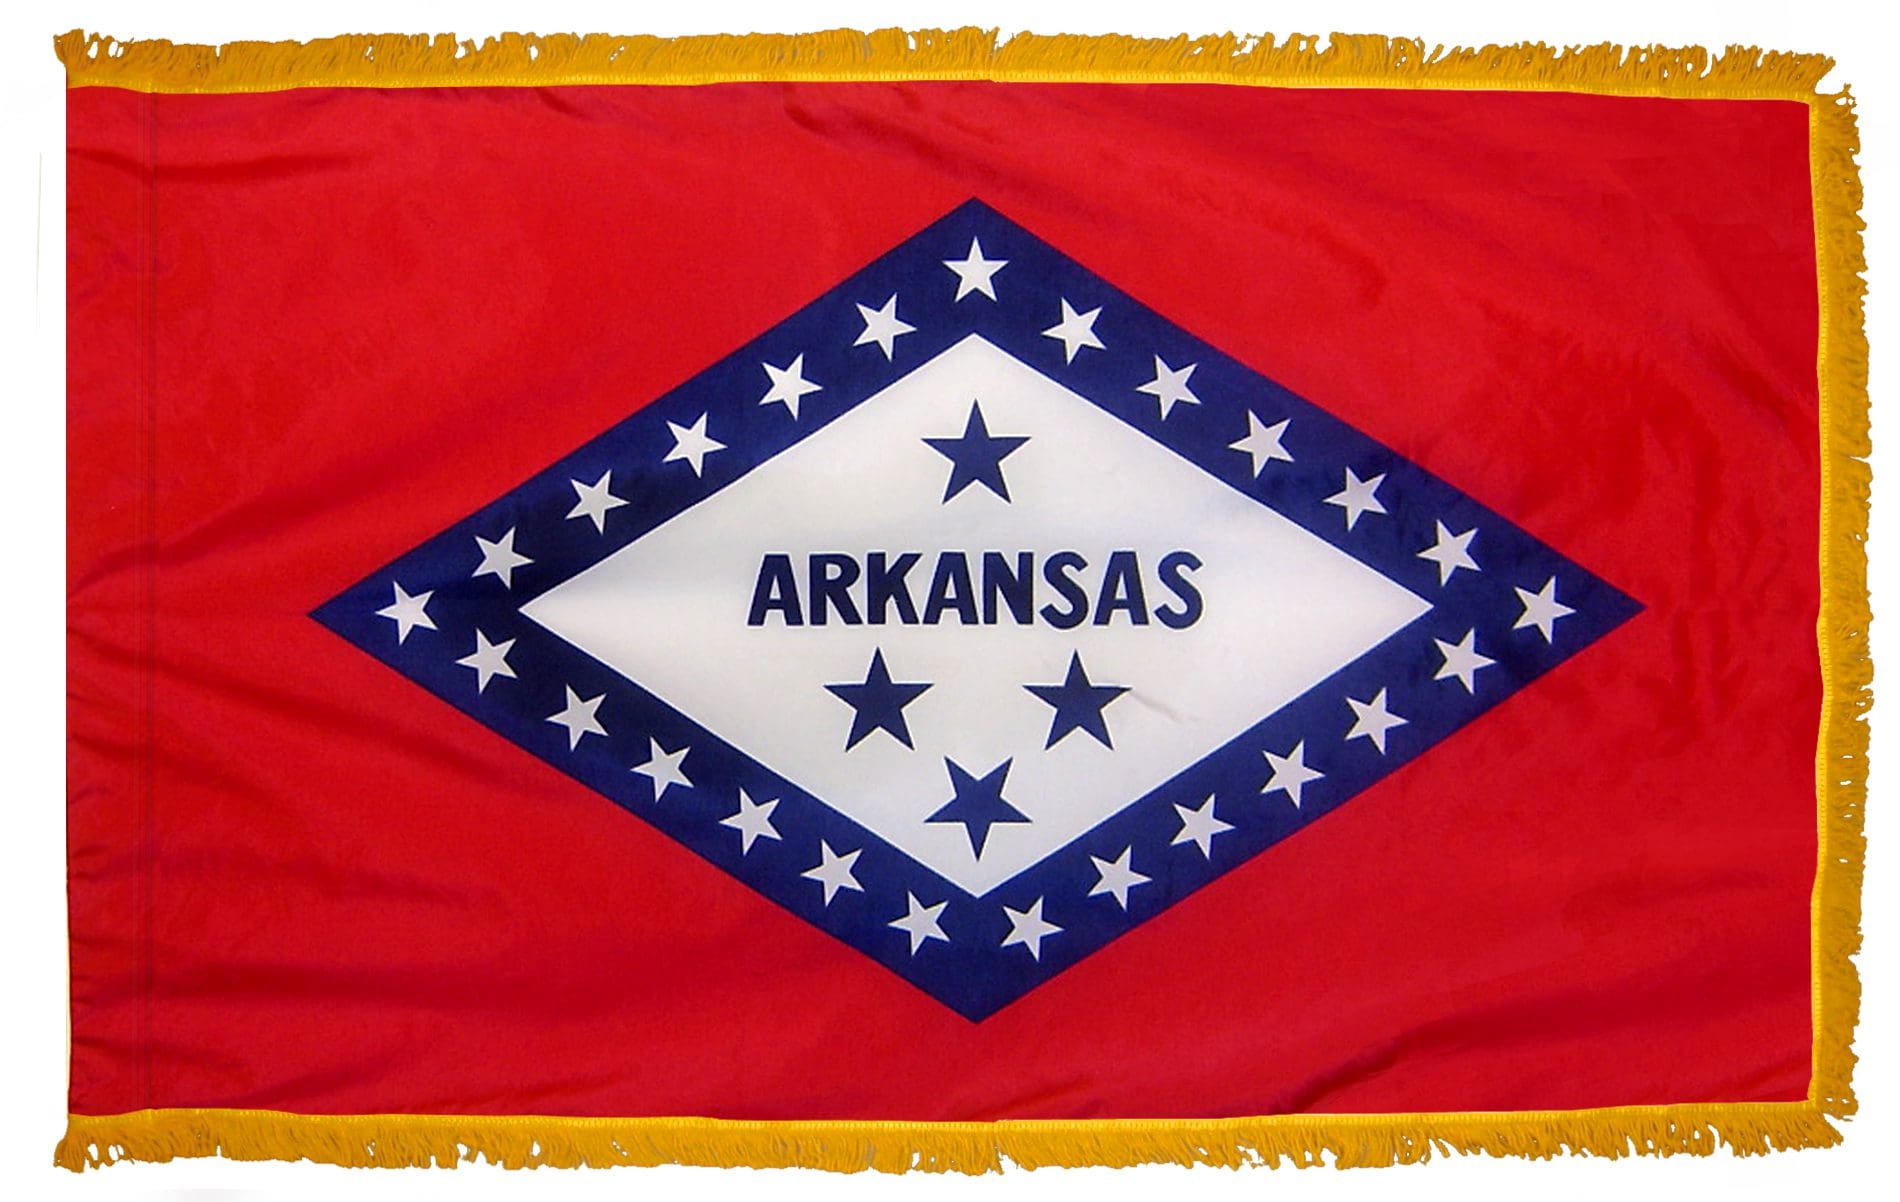 Arkansas State Flag 3x5 or 4x6 ft. (fringed)